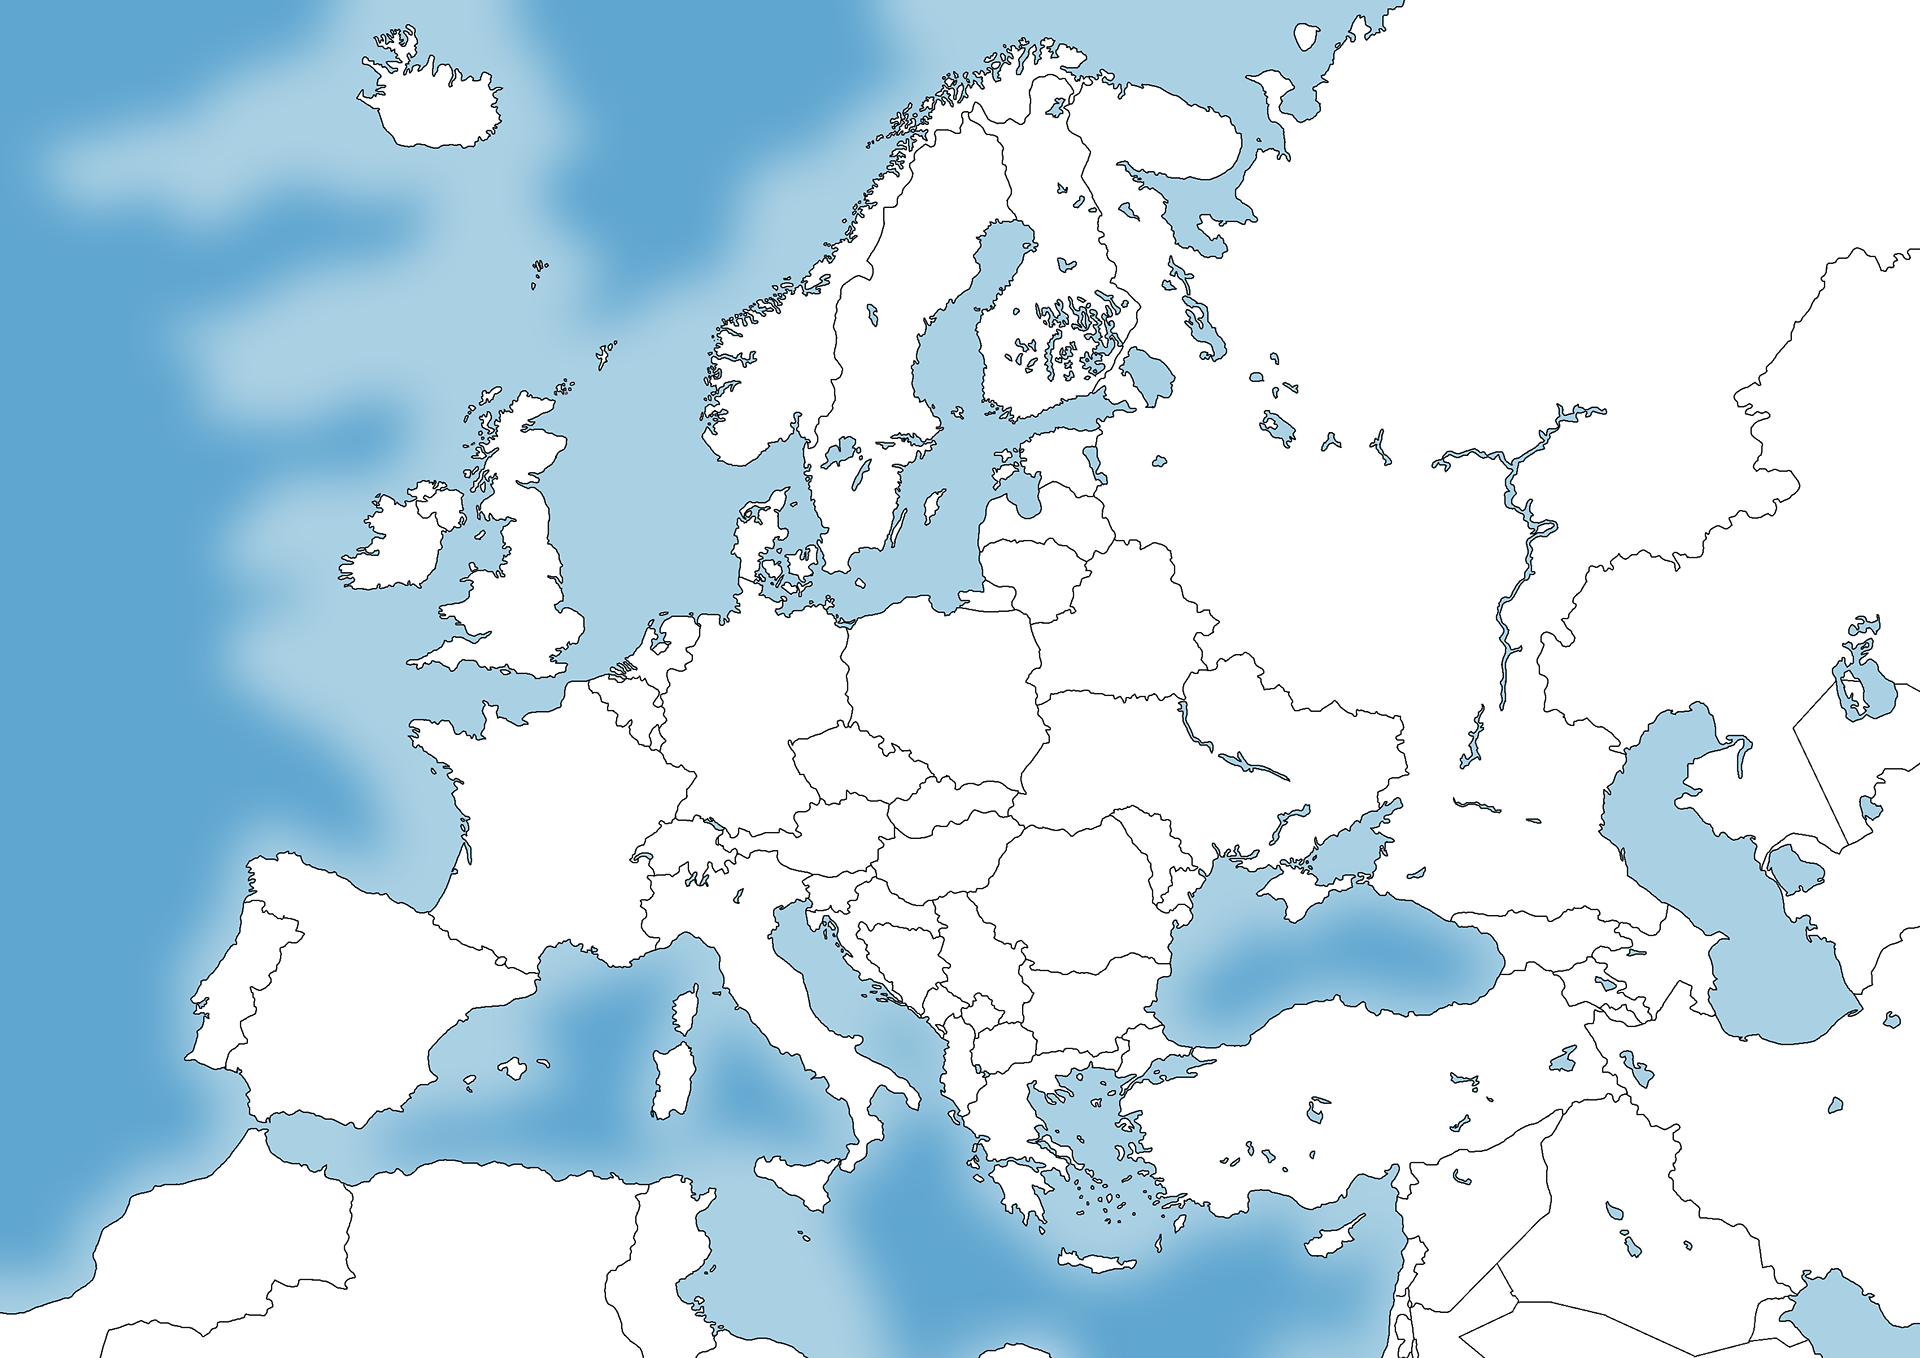 Карта Европы маппинг 1936. Контурная политическая карта Европы 1939. Карта Европы 1936 года для маппинга. Карта Европы 1939 для маппинга.